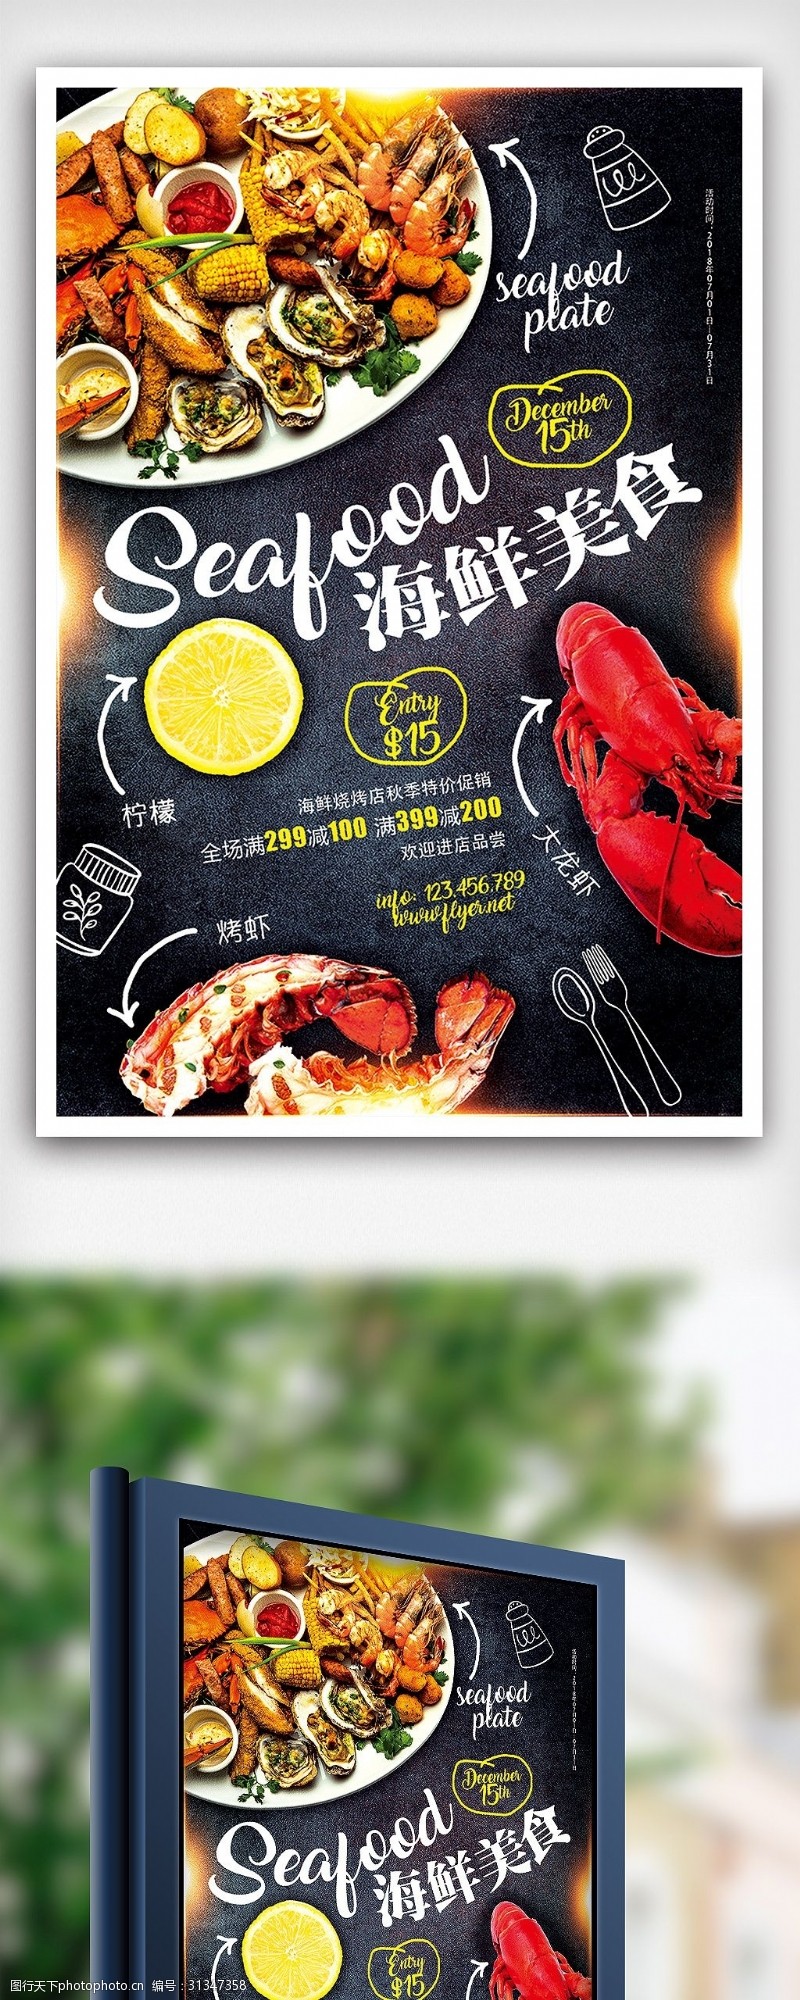 饮品免费下载精品美食海鲜店促销餐饮海报